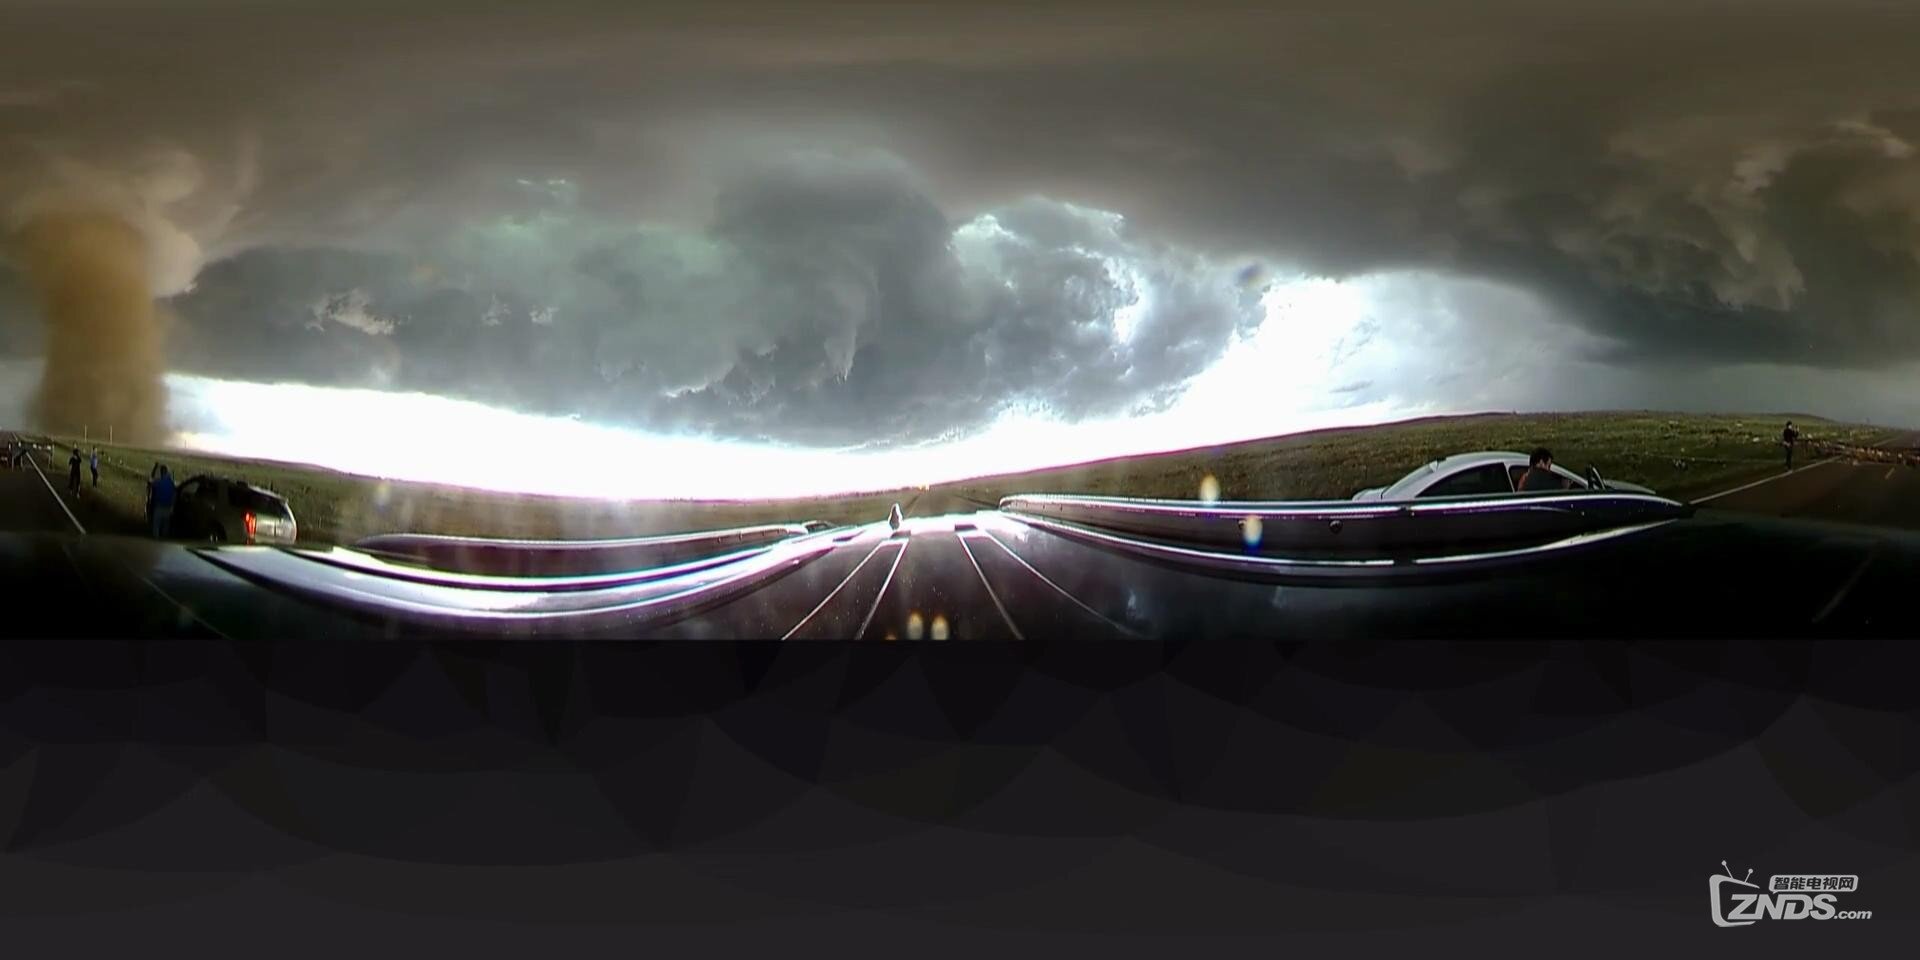 龙卷风现场vr直击 风暴画面震撼似大片3D体验_20171121141656.JPG